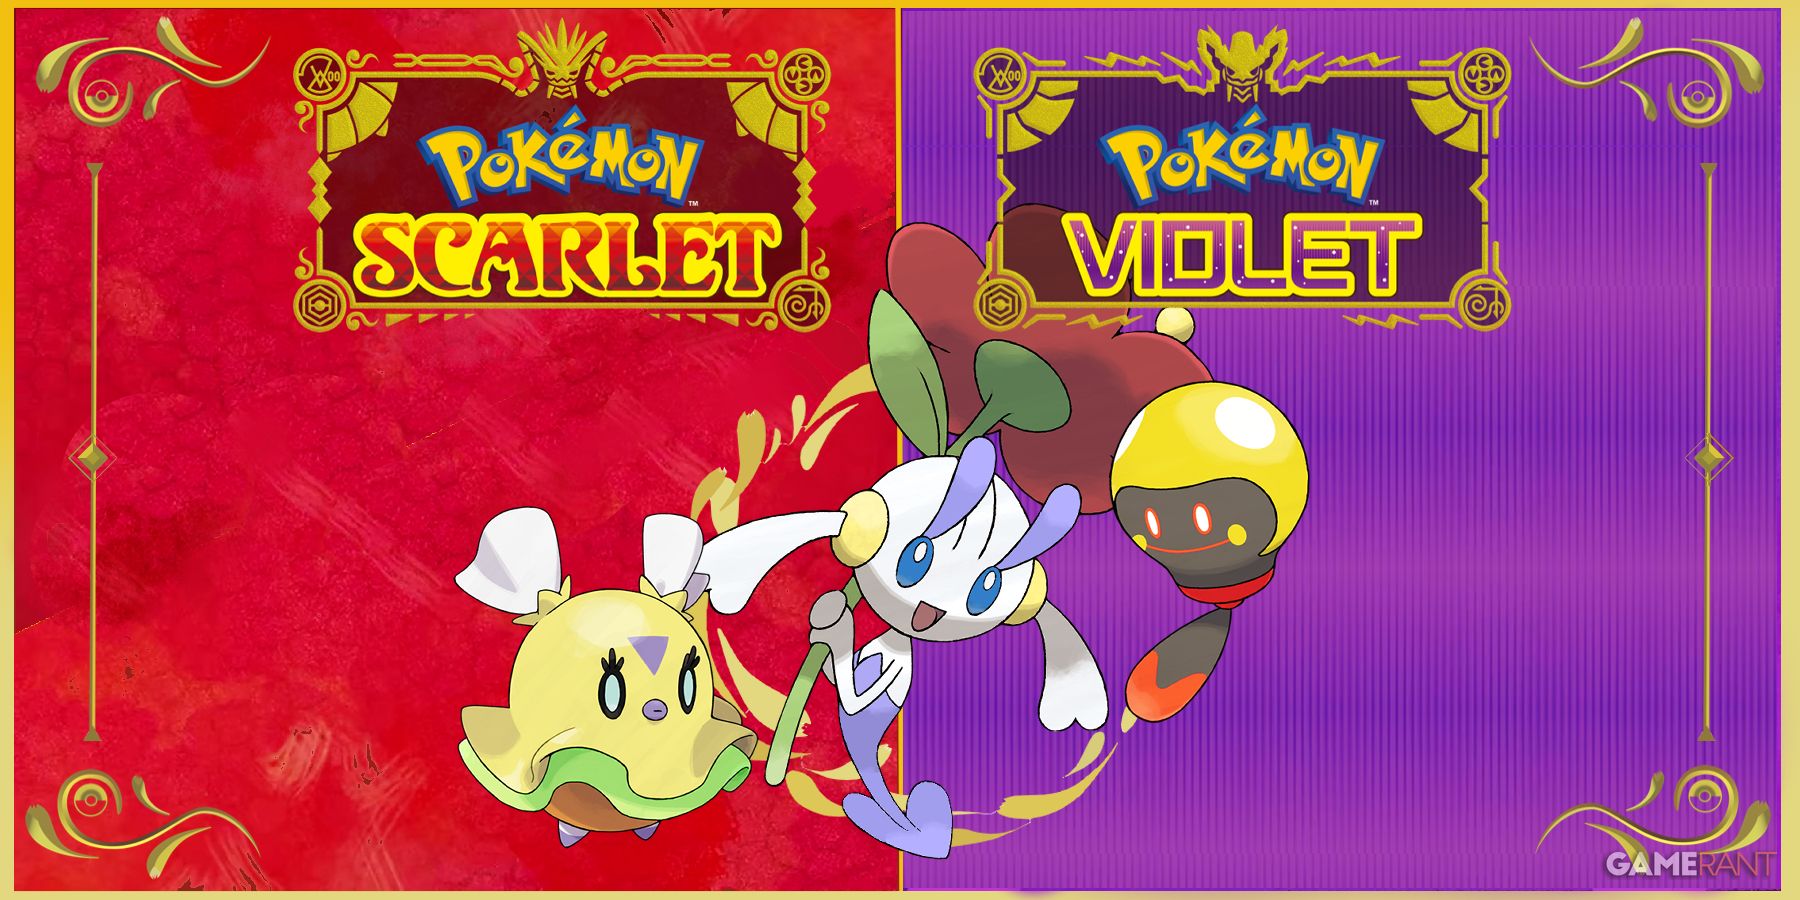 Full Regional Paldea Pokedex Shiny 6IV Max Stats | Pokemon Scarlet and  Violet